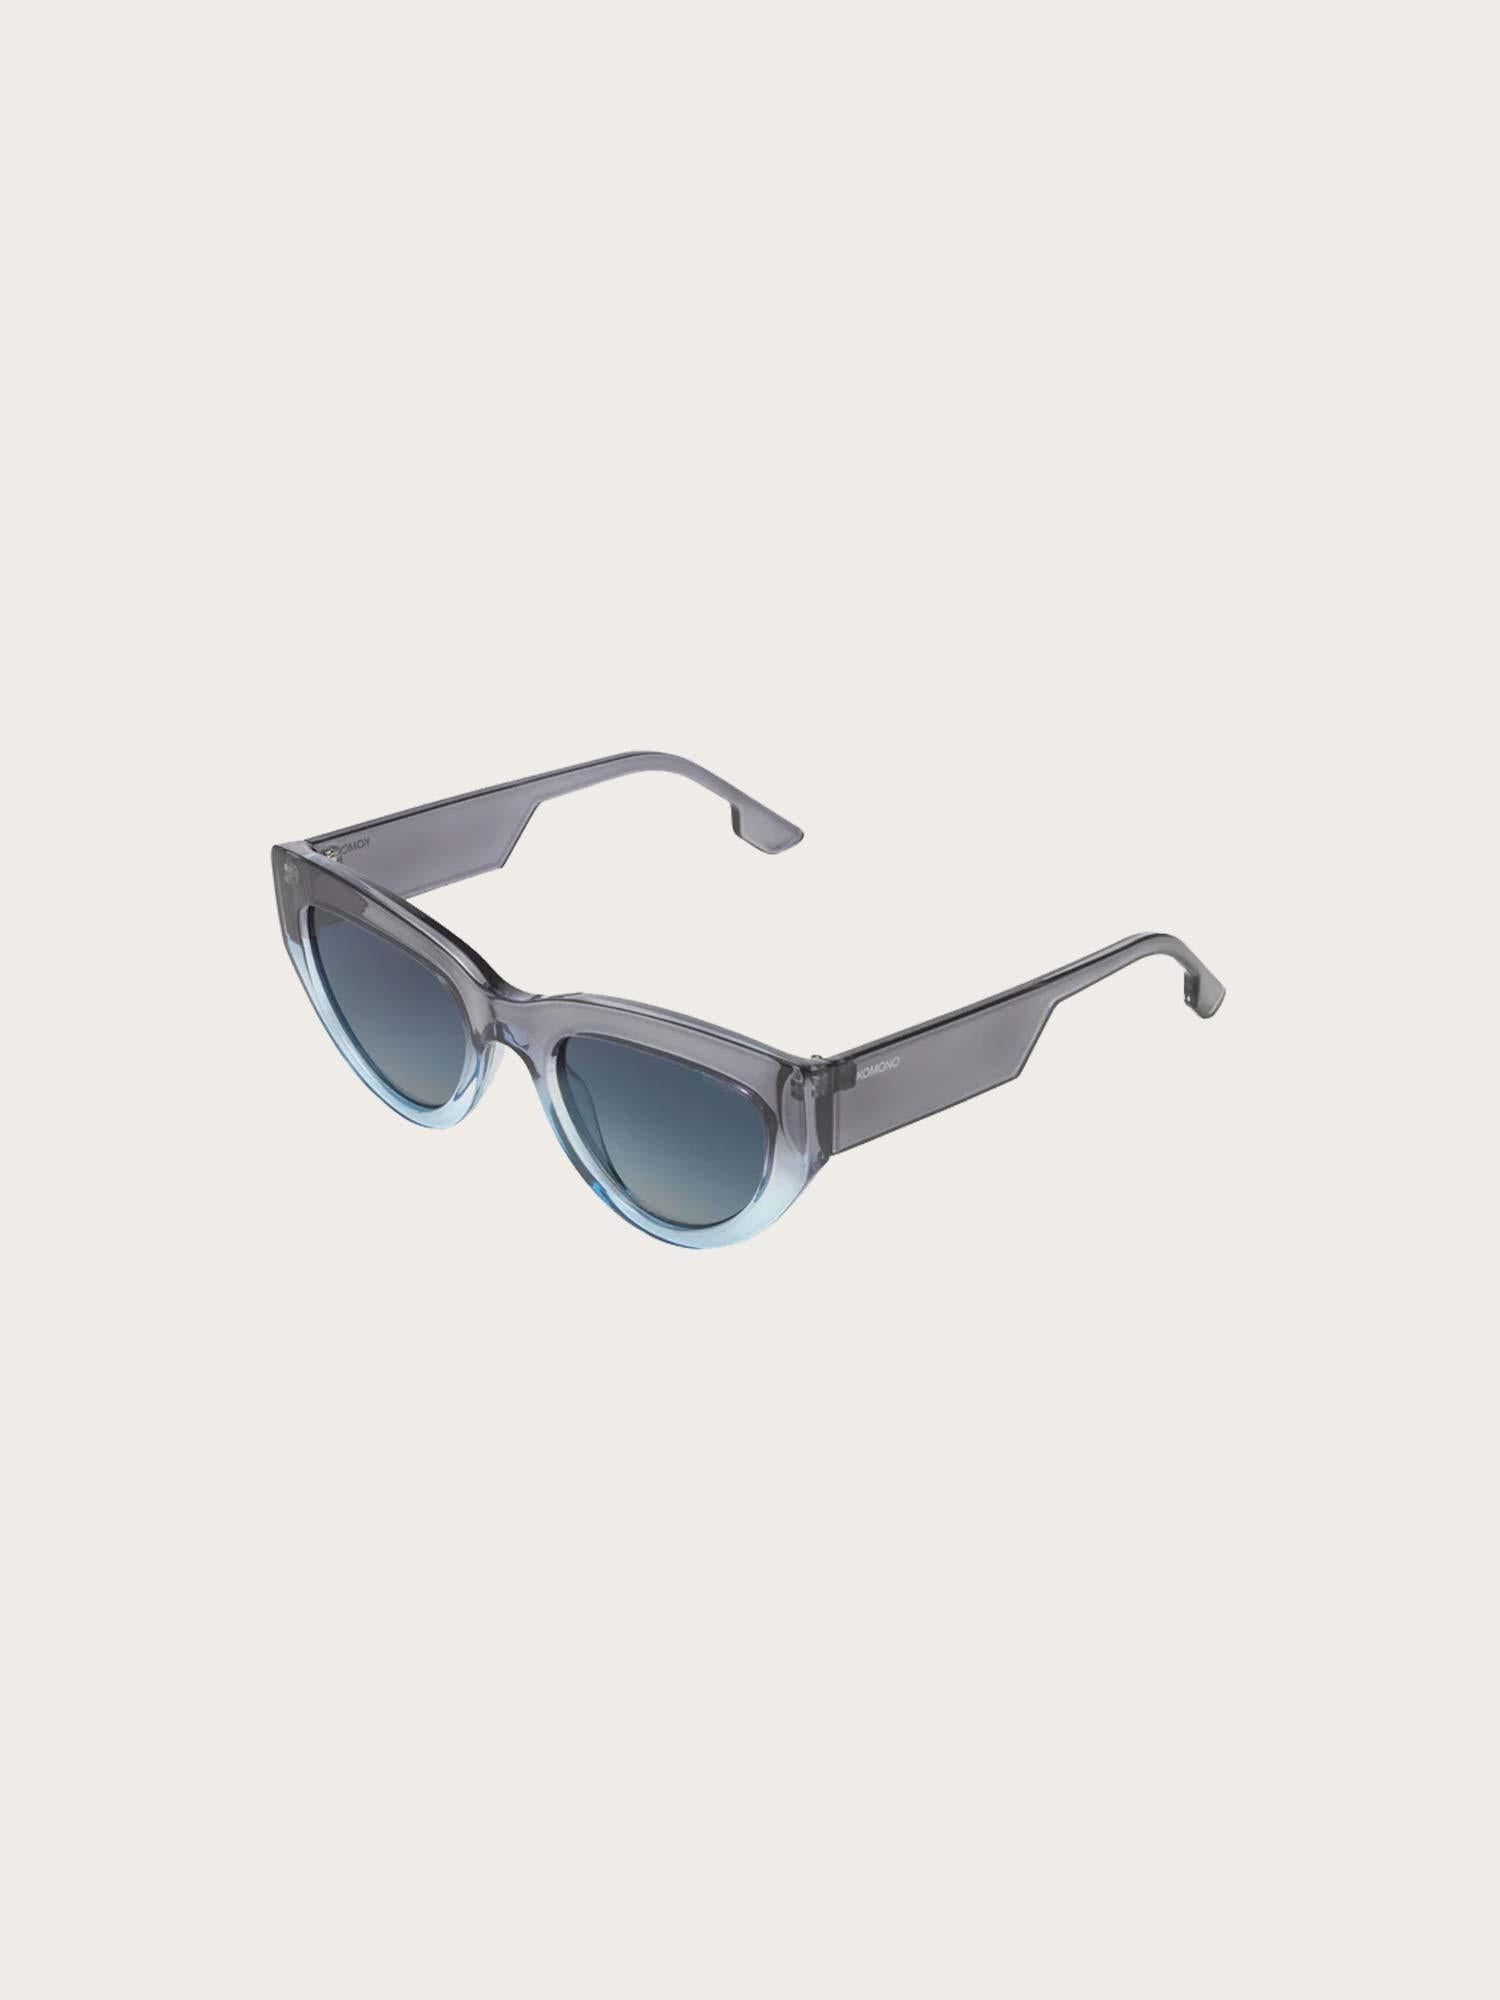 Kim Sunglasses - Underwater